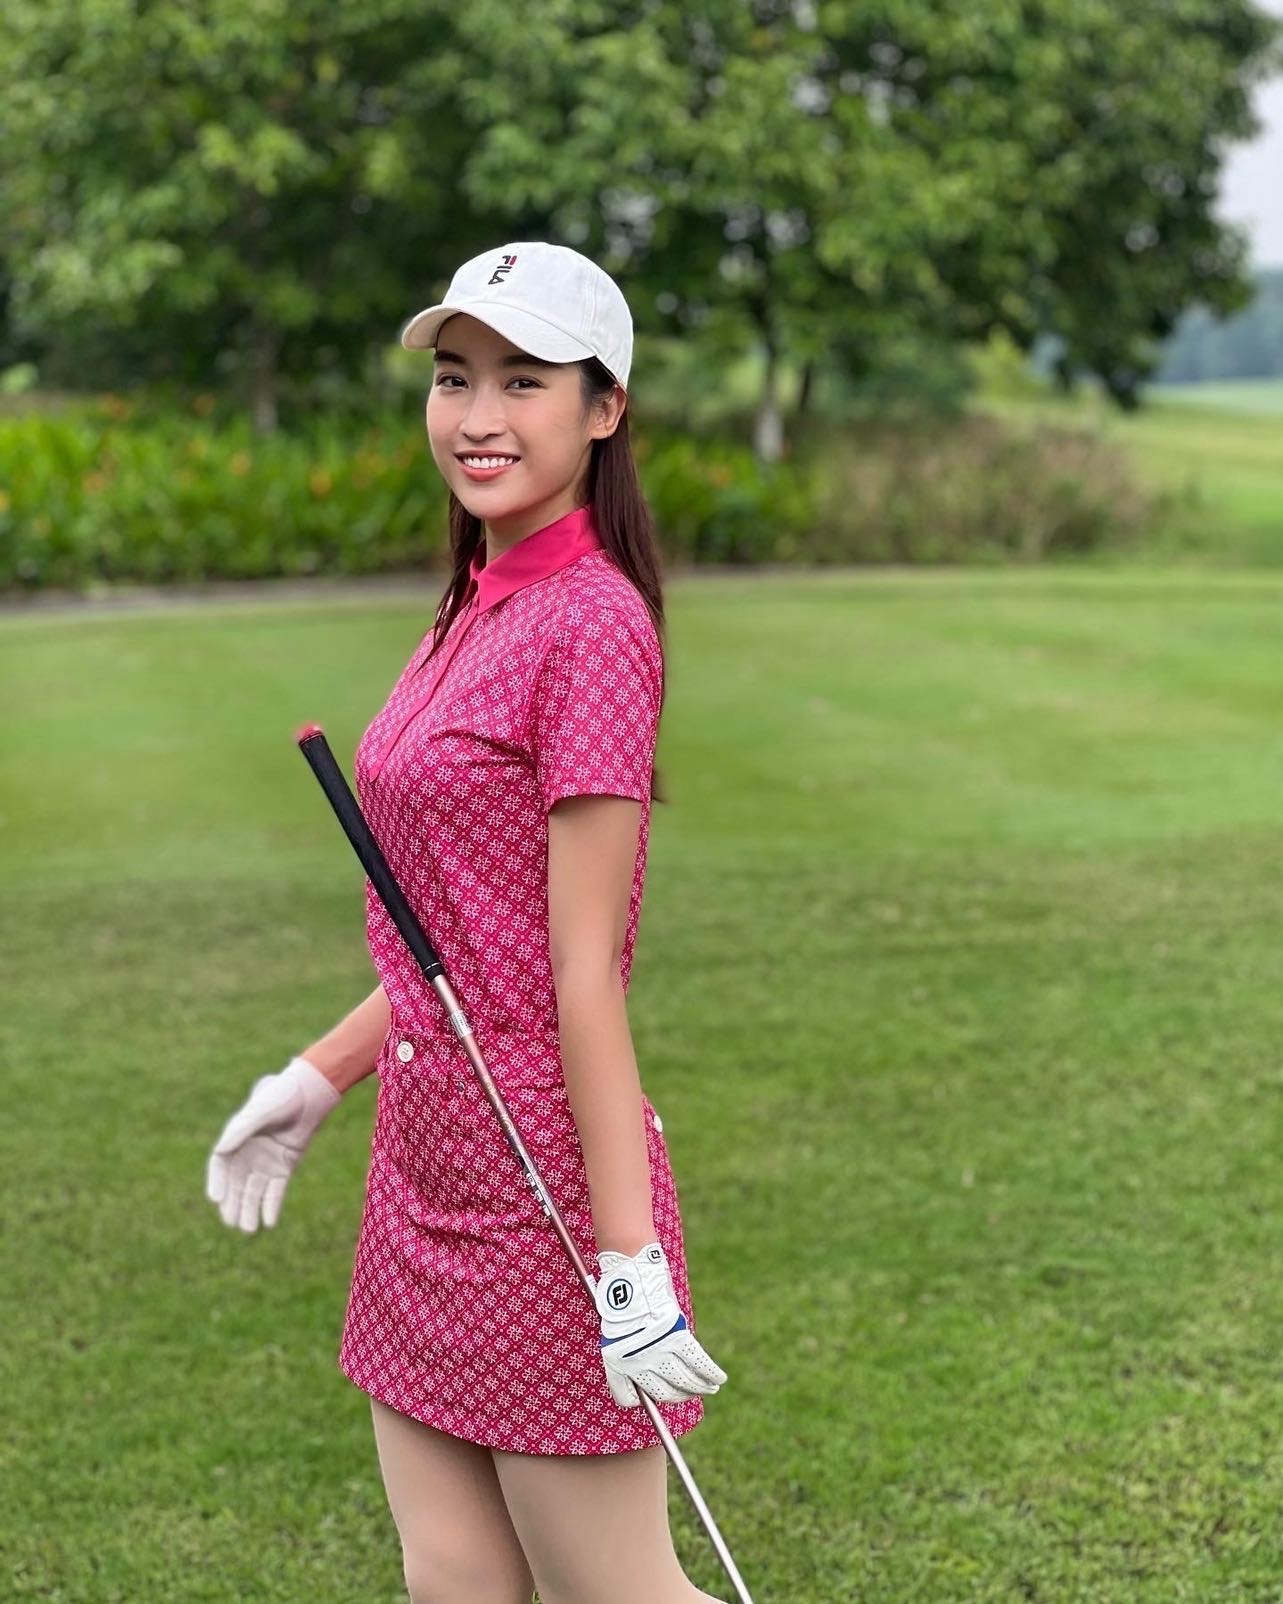 Đỗ Mỹ Linh nổi bật giữa sân golf với set đồ màu hồng.